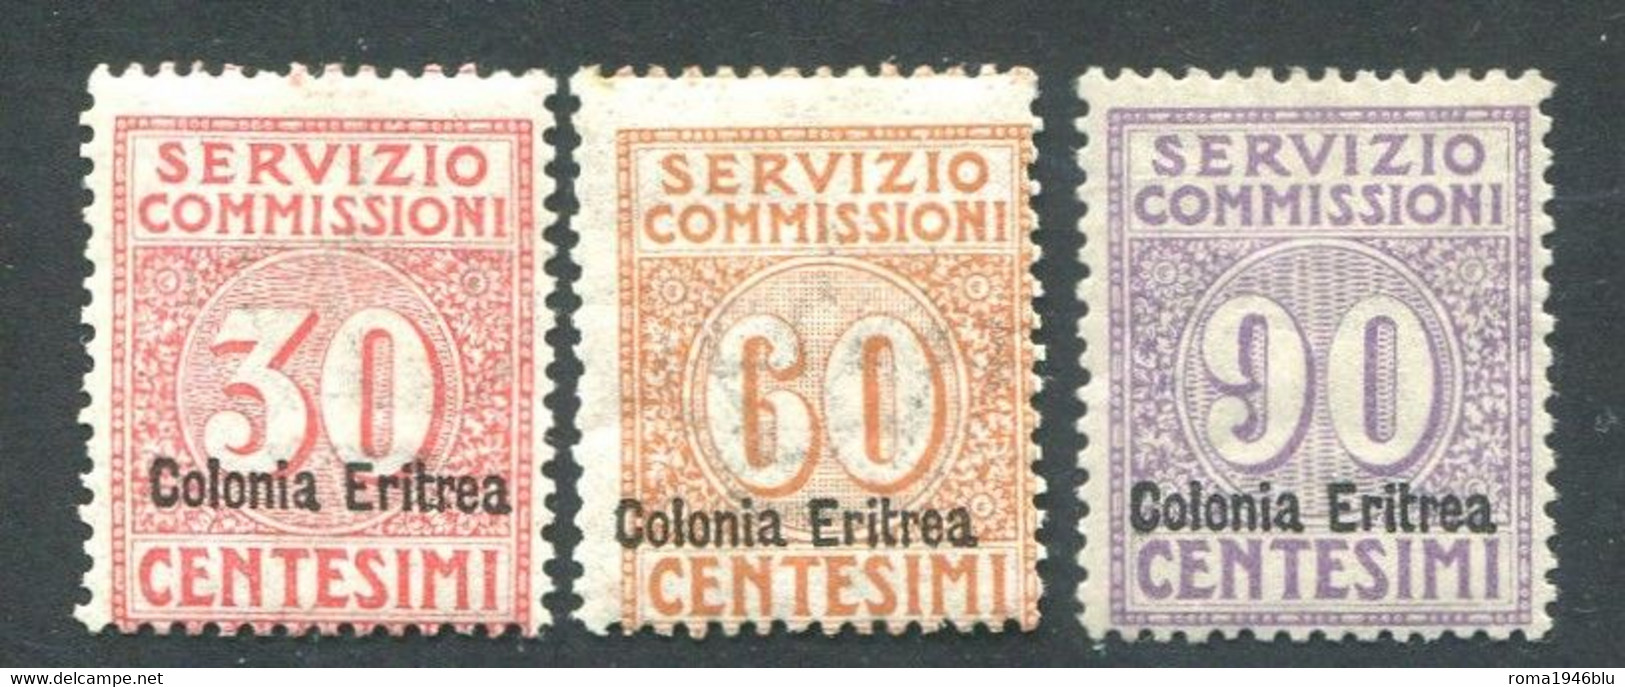 ERITREA 1916 SERVIZIO COMMISSIONI SERIE CPL.* LINGUELLA IMPERCETTIBILE - Eritrea